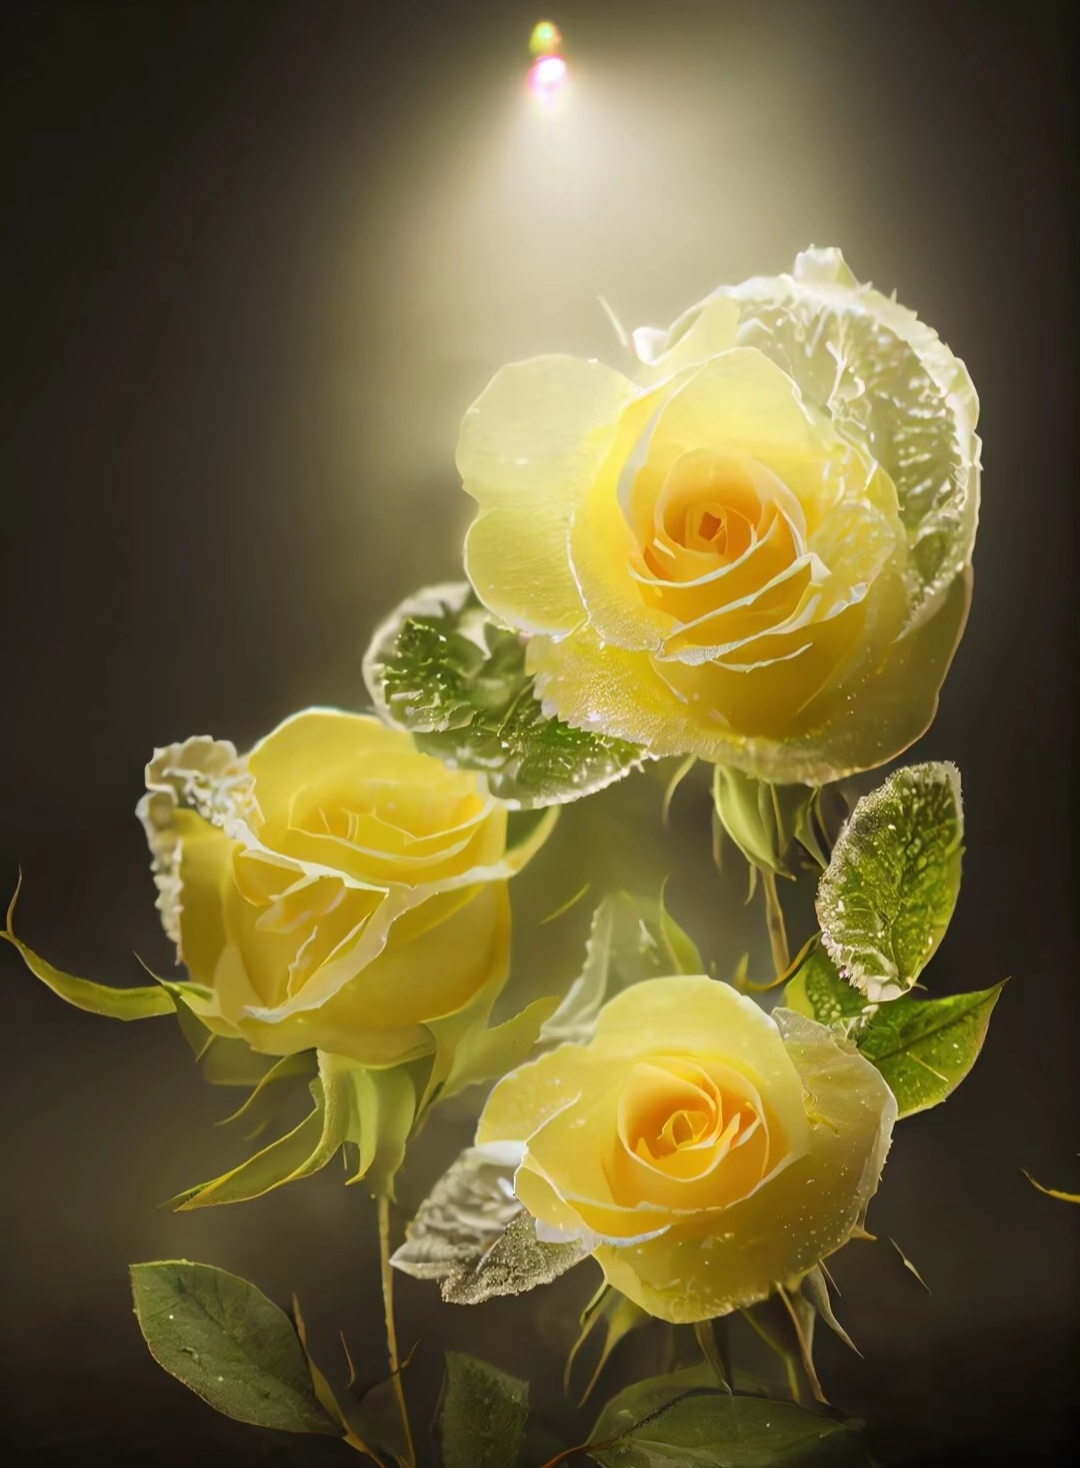 这三朵黄色玫瑰,犹如夏日阳光下的精灵,明媚而热烈